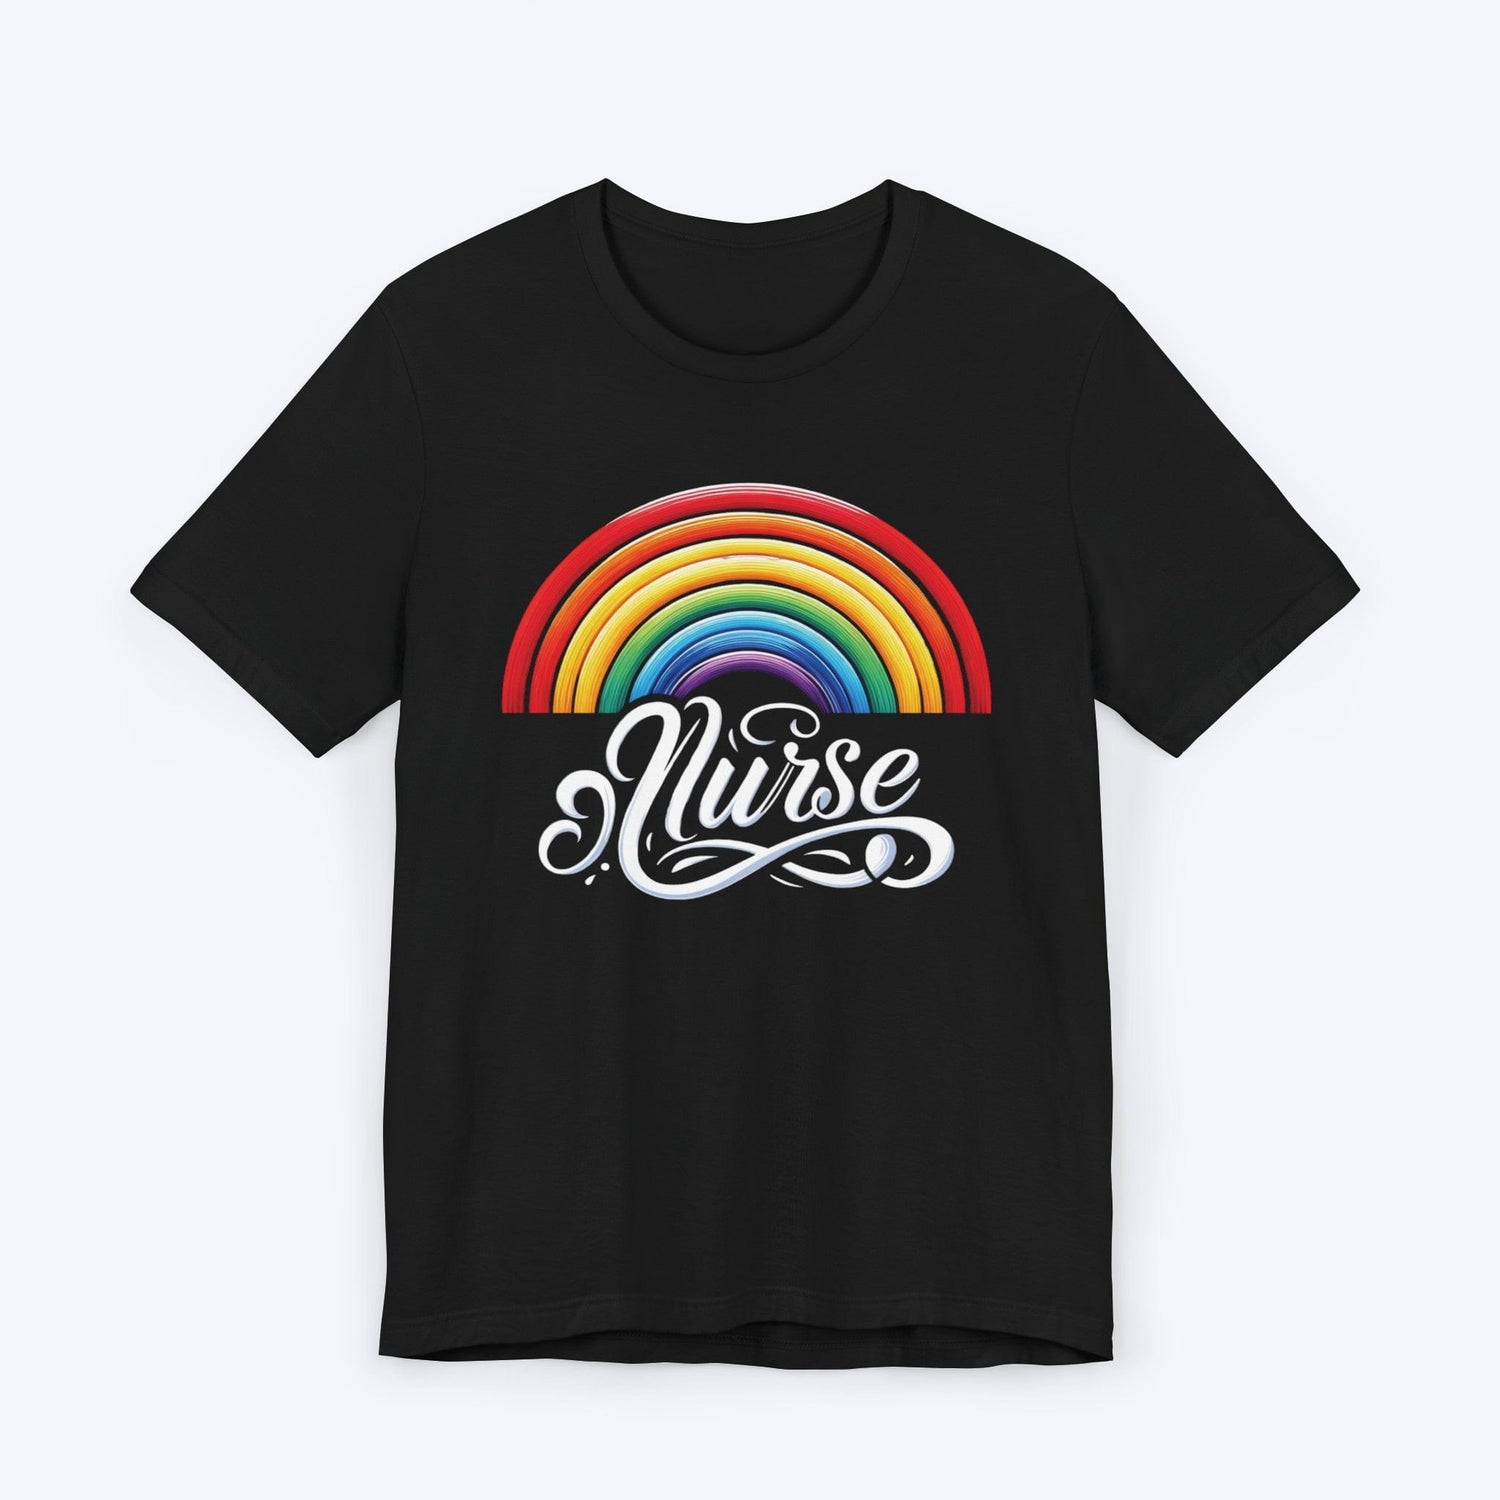 T-Shirt Black / S Spectrum of Compassion: Nurse Pride T-shirt